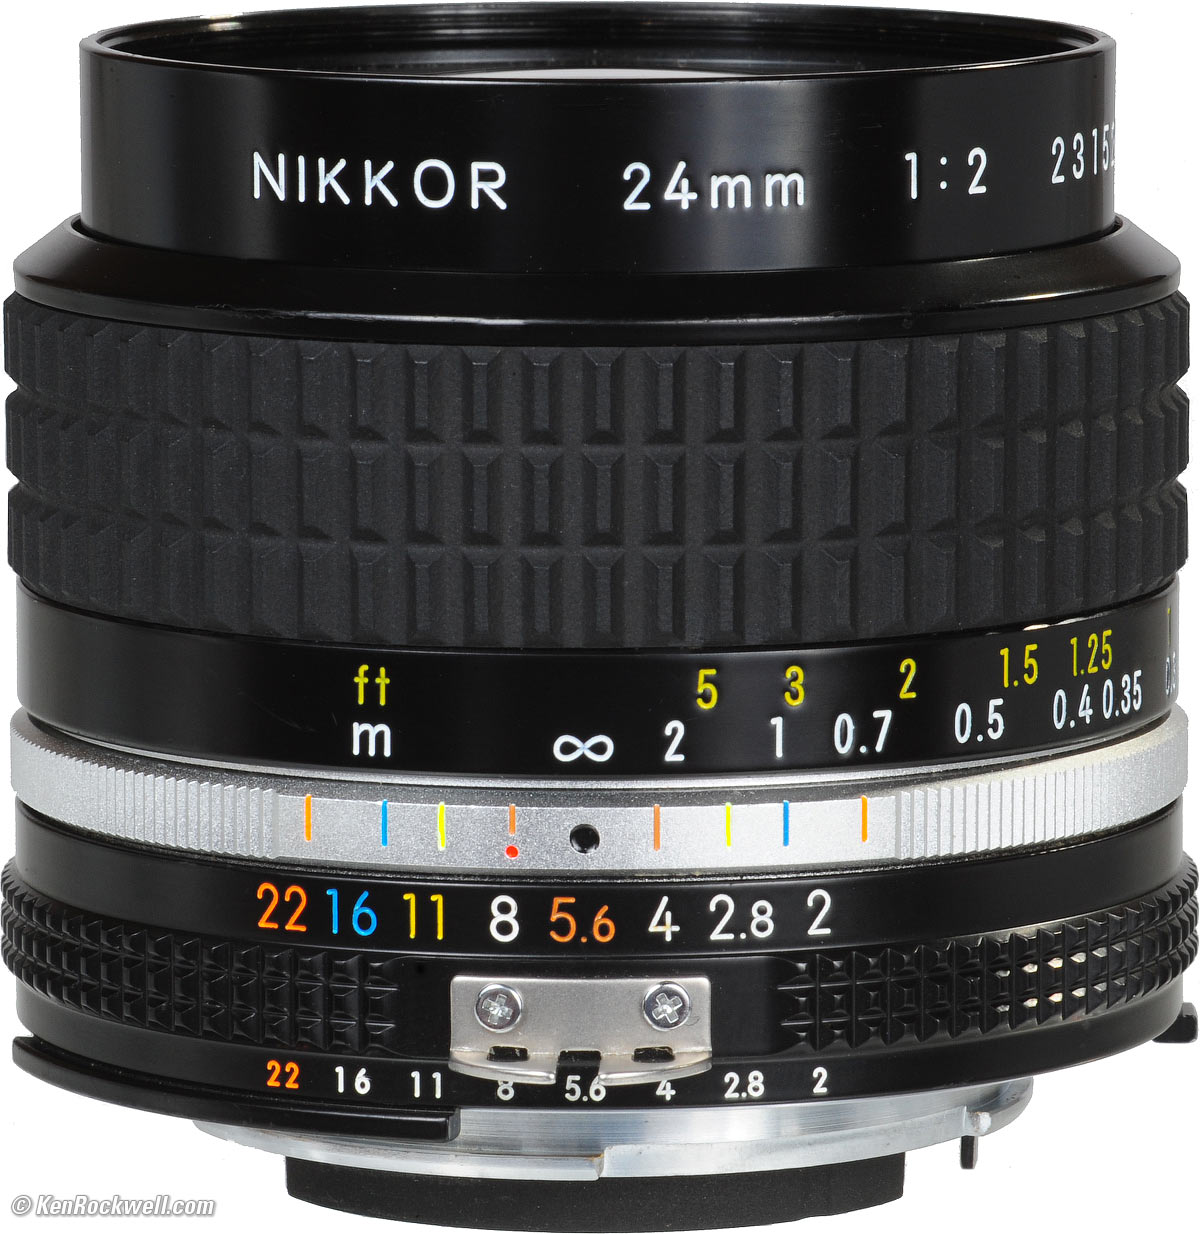 ニコン Ai-S Nikkor 24mm F2